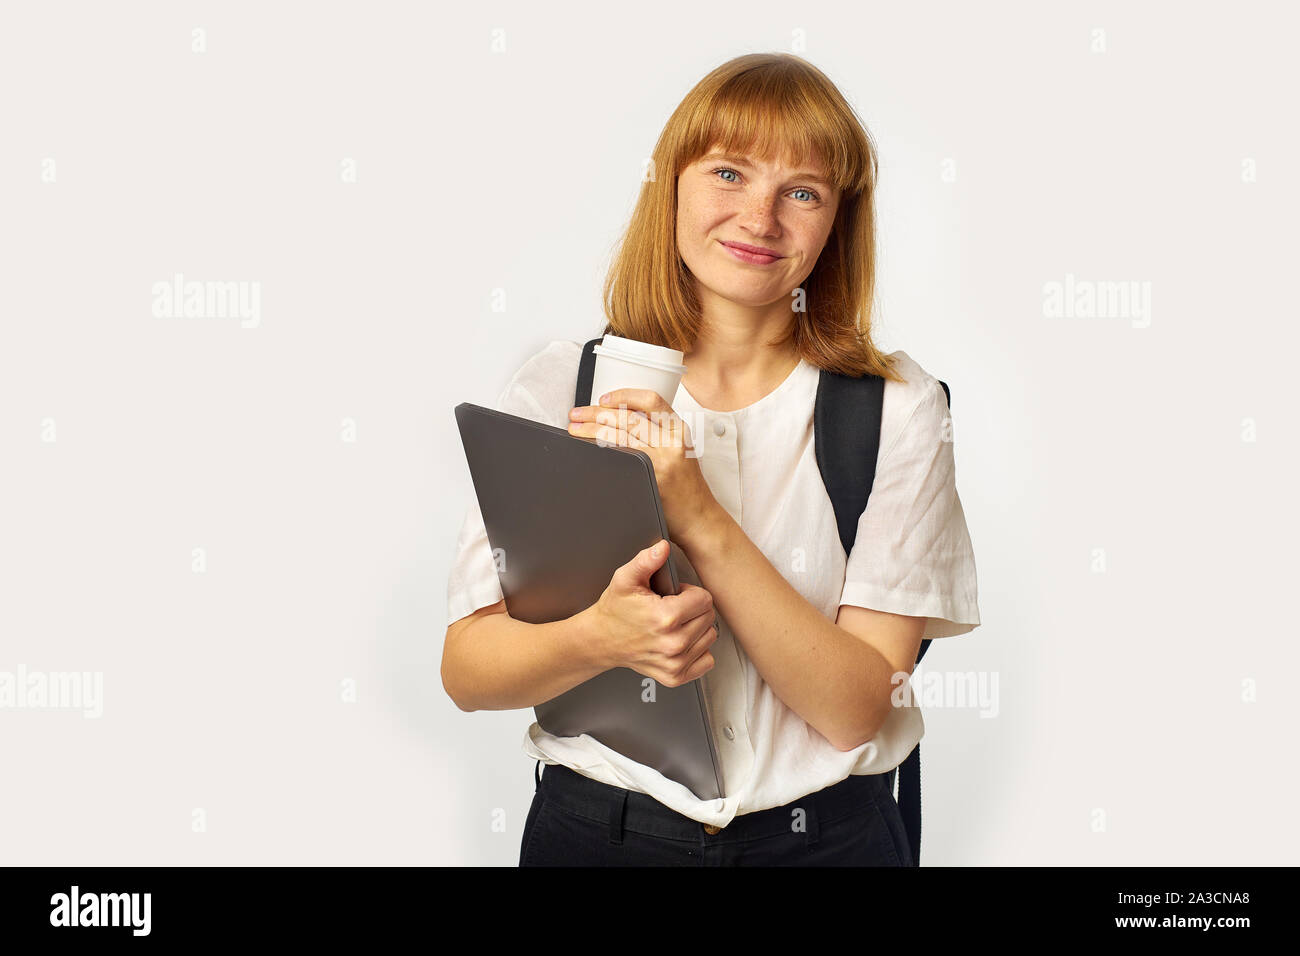 Image de jeune fille rousse avec des taches de rousseur wearing white t-shirt et sac à dos noir regardant la caméra Banque D'Images